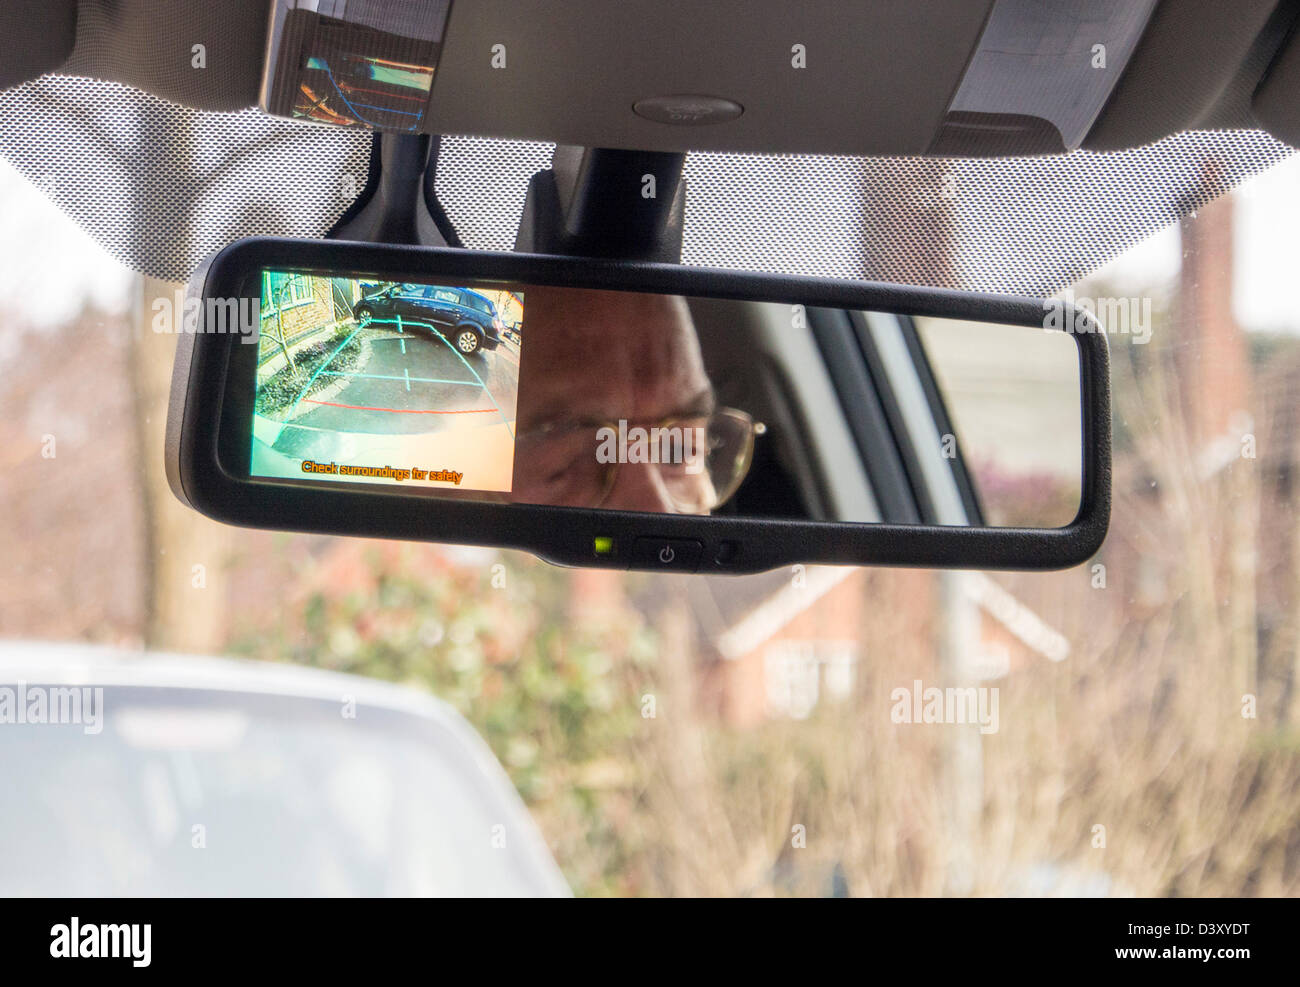 Une Toyota Hybrid Synergy Drive aura une voiture, montre l'affichage de la caméra de recul vue arrière dans le miroir. Banque D'Images